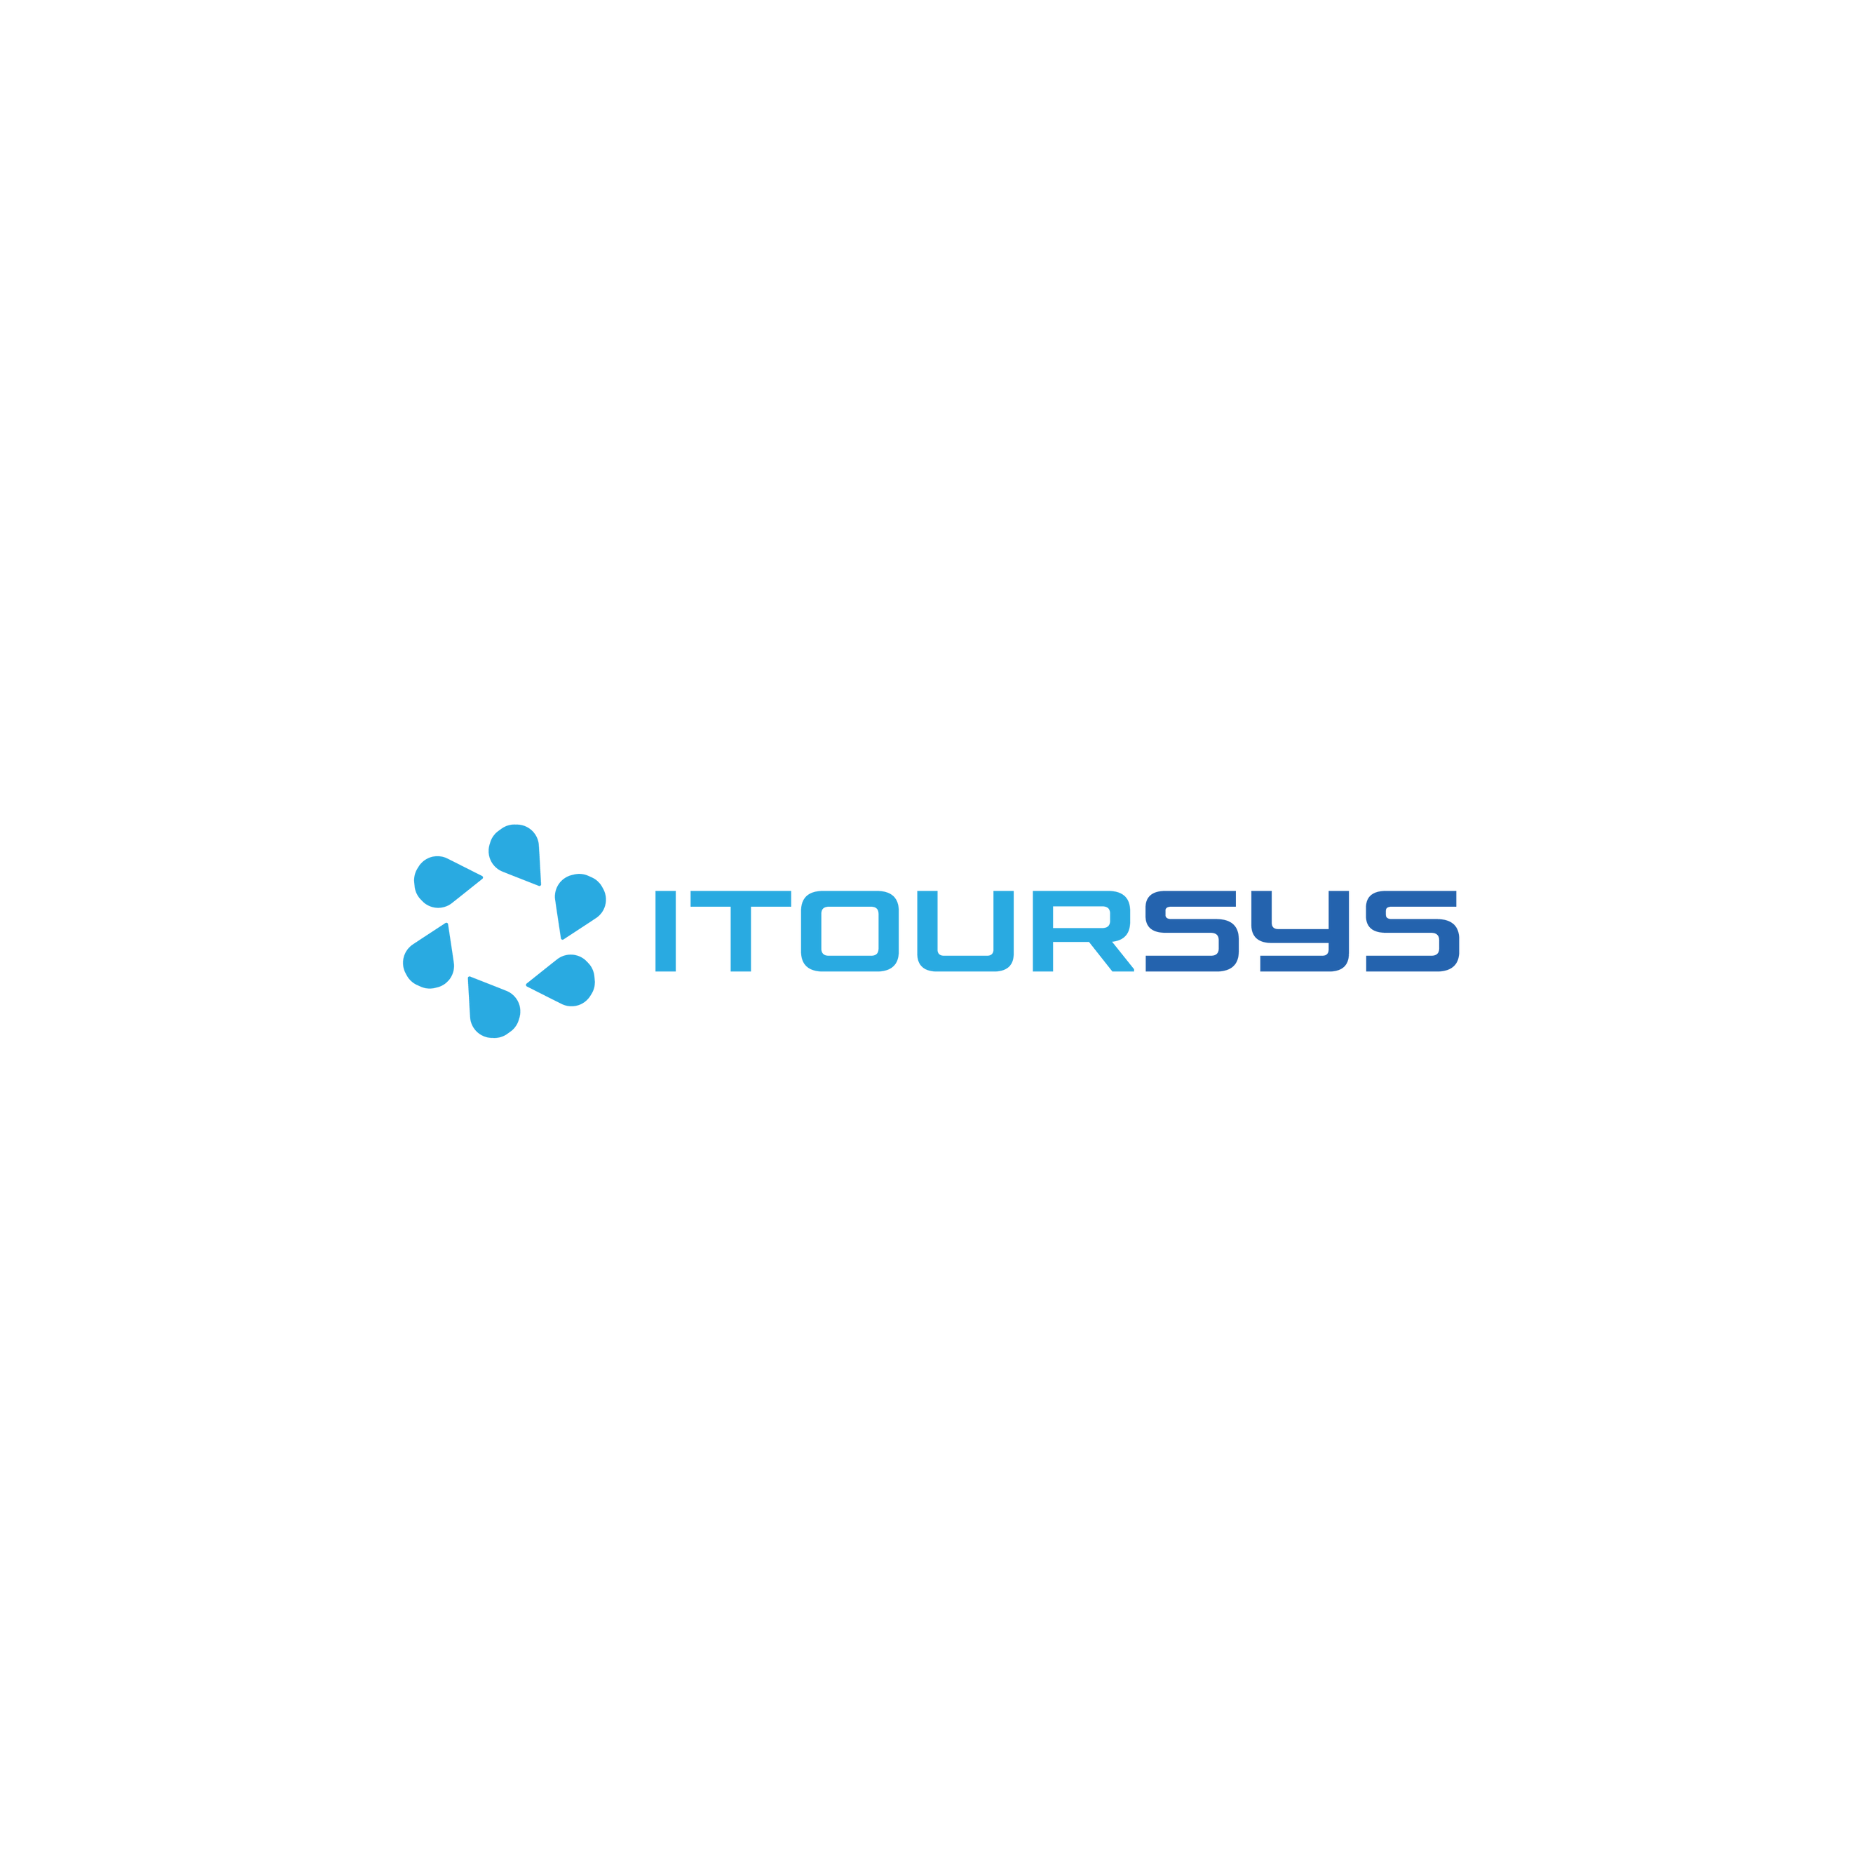  Điều hành tour du lịch bằng phần mềm Itoursys